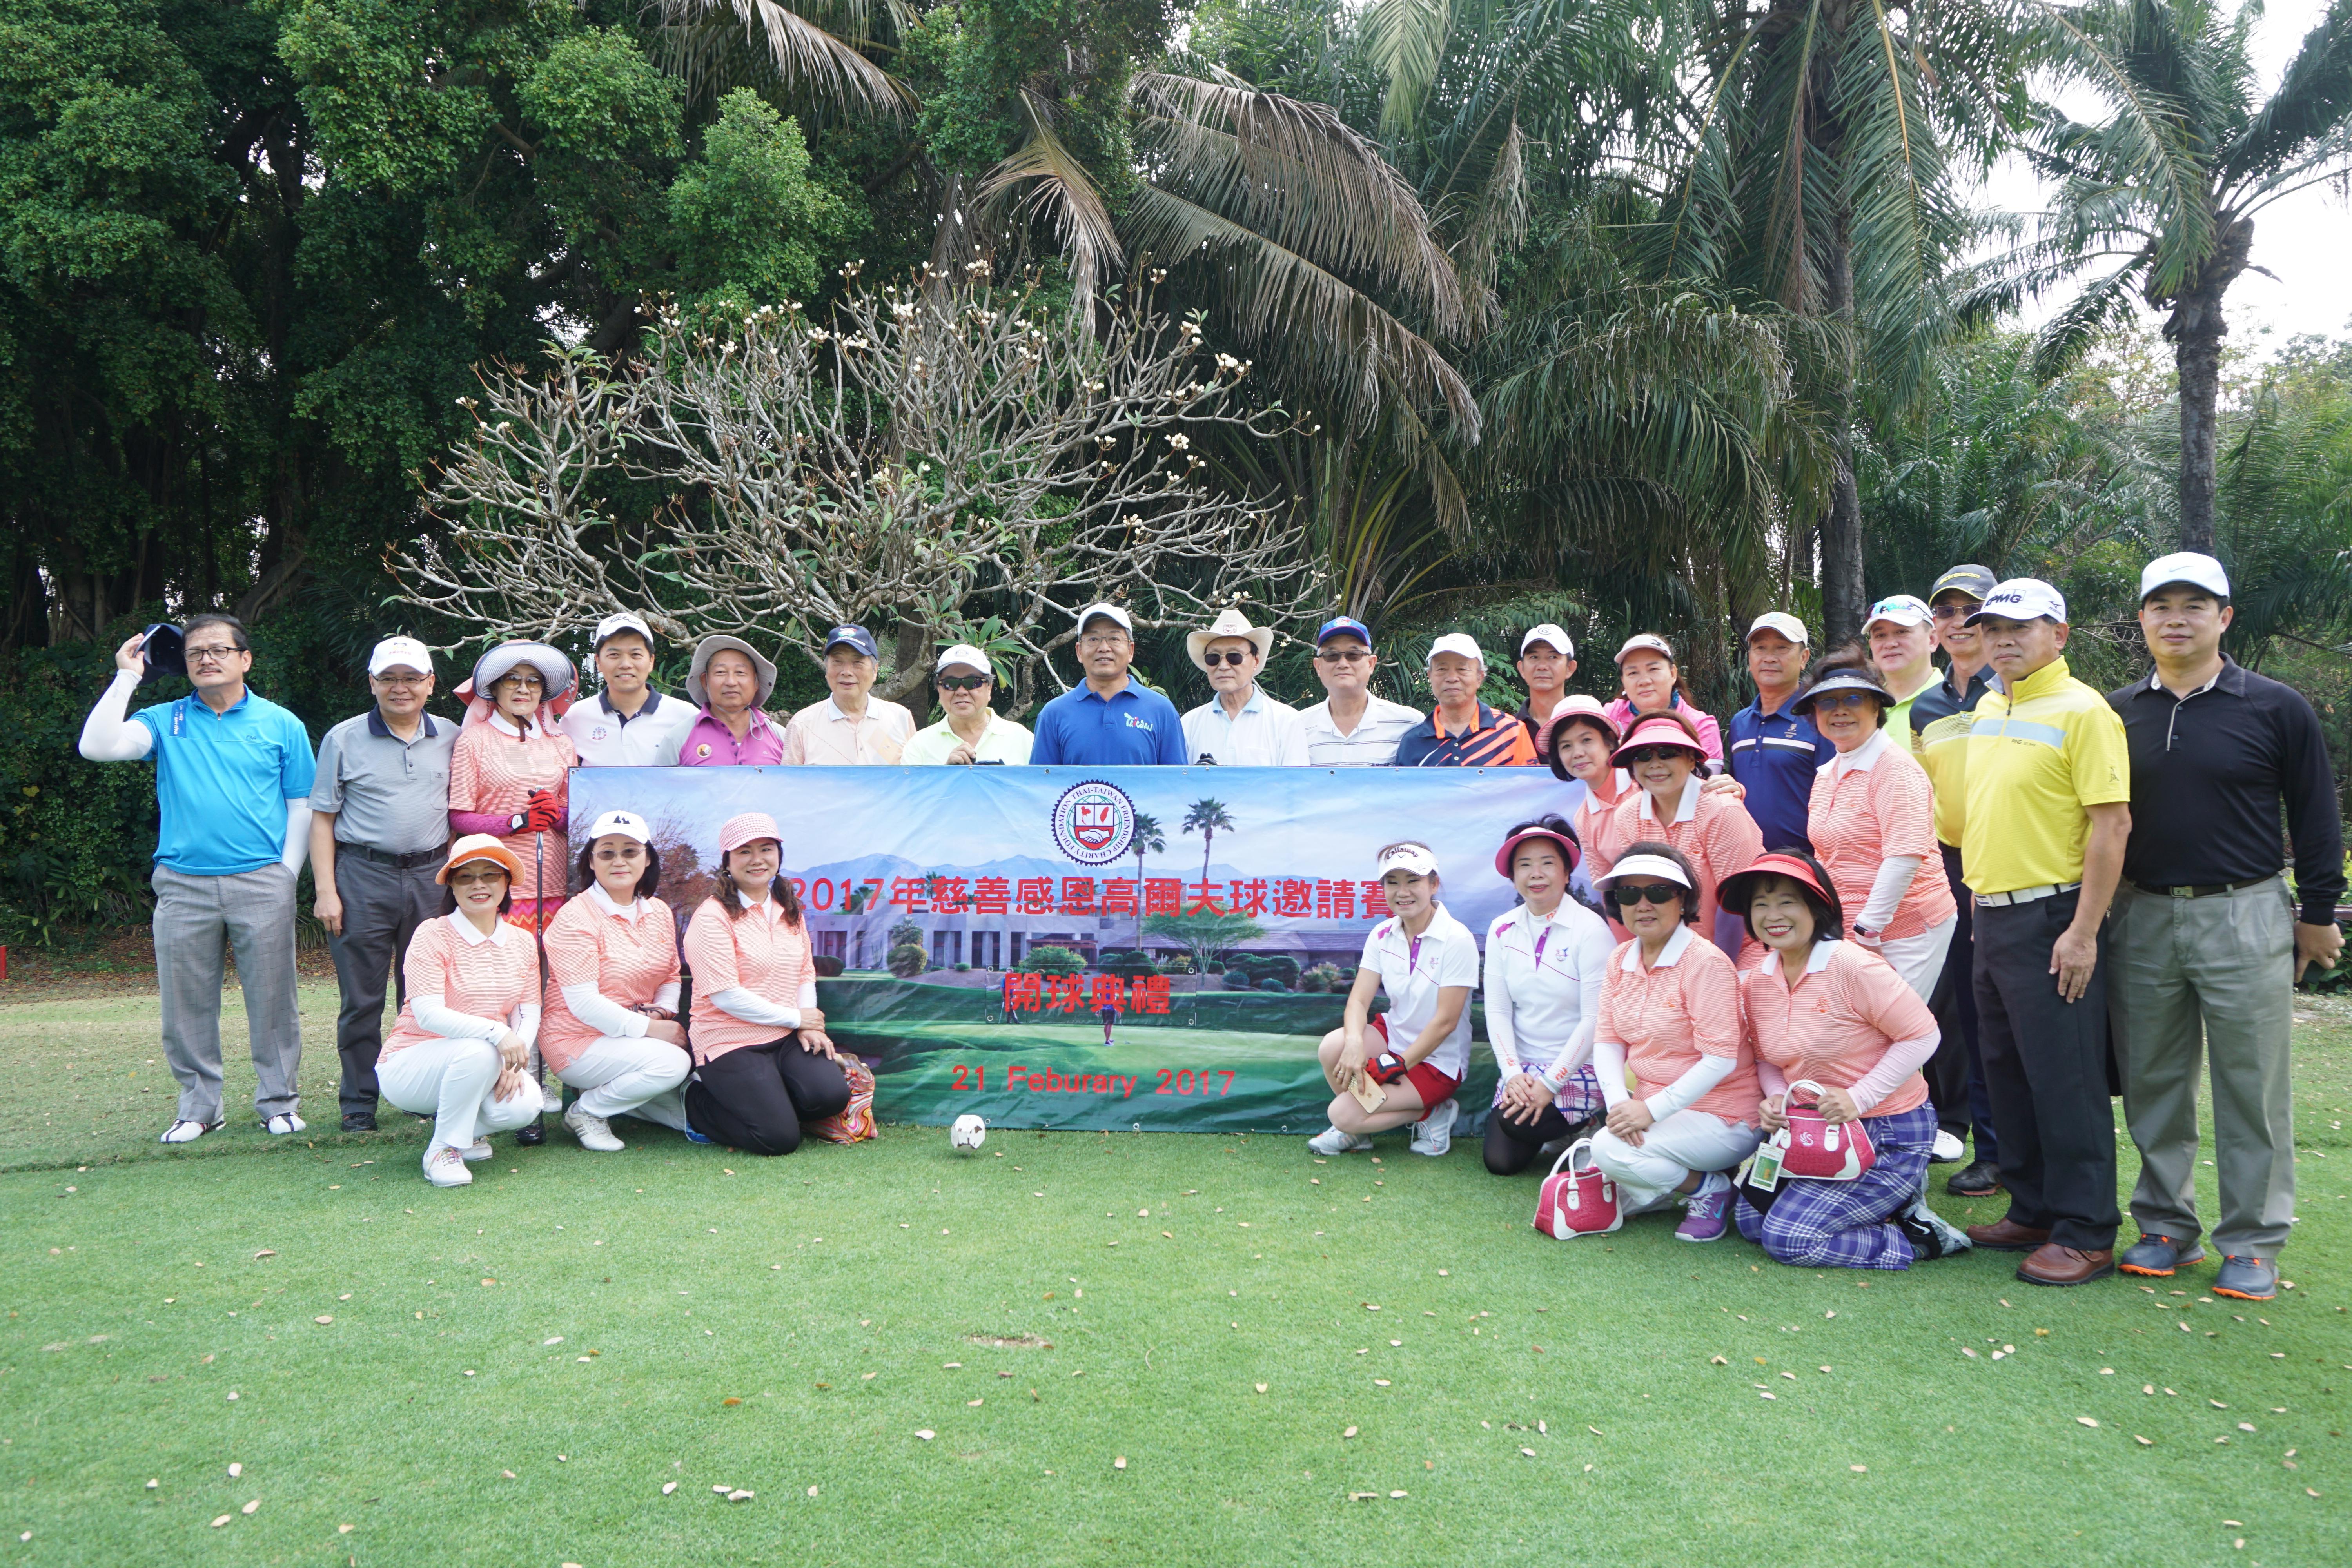 駐泰國代表處謝大使武樵於2月21日出席臺灣之友慈善基金會舉辦之慈善感恩高爾夫球邀請賽與開球儀式選手合影。